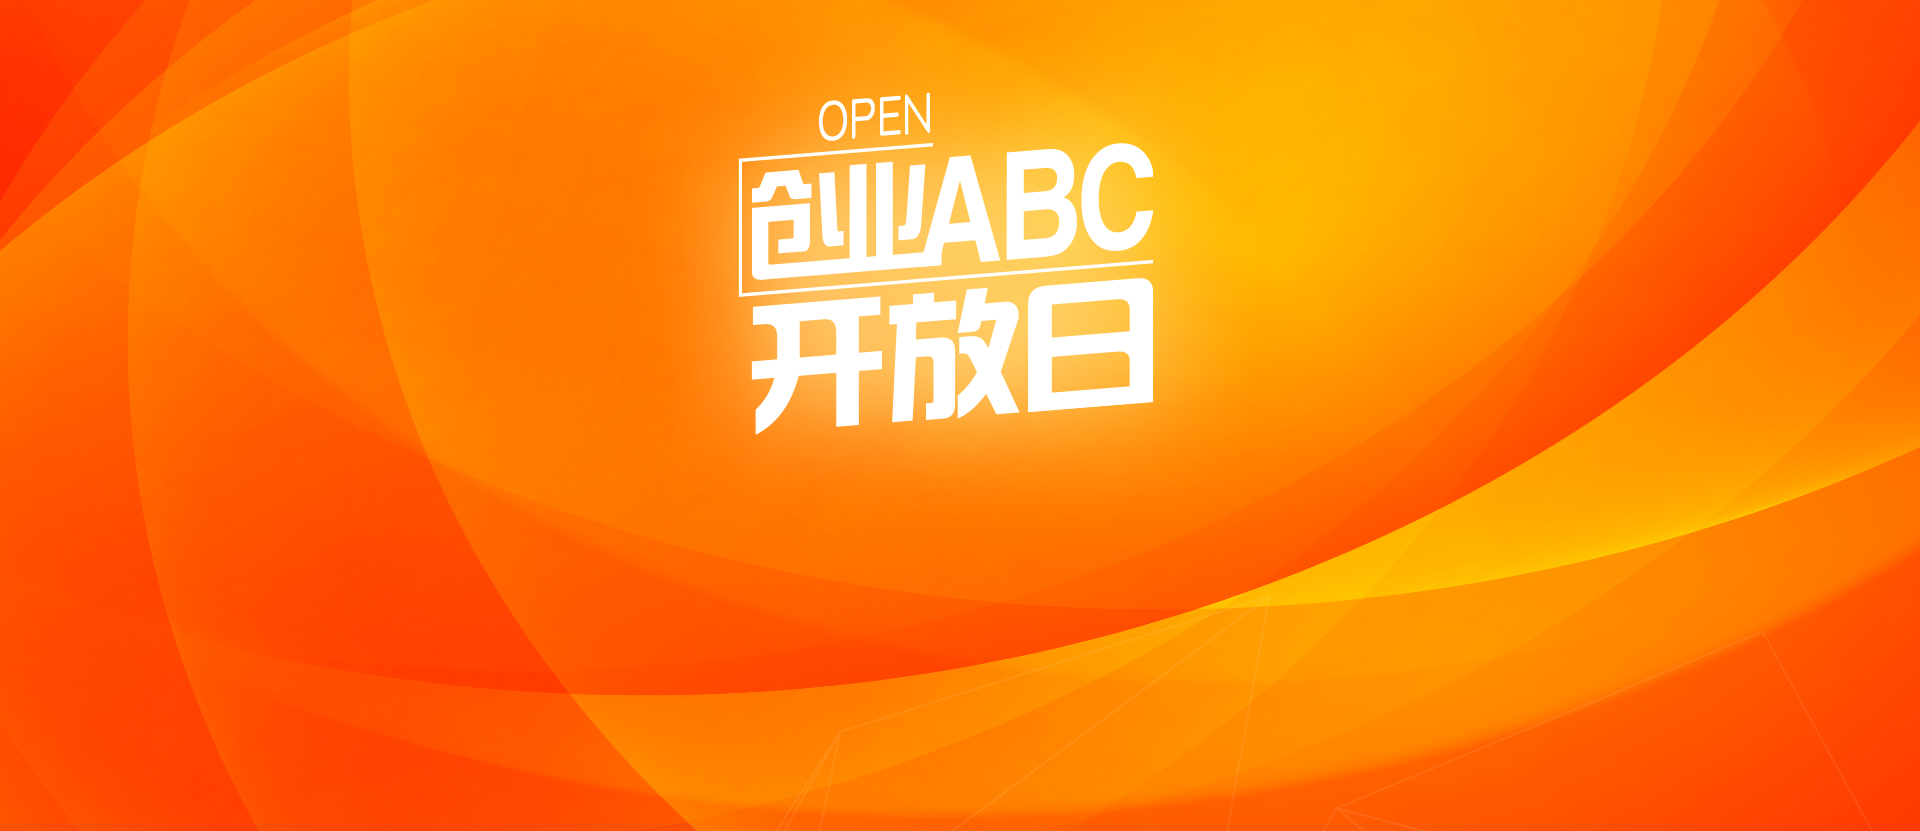 创业ABC第138期开放日 - 创业ABC开放日 - 创业活动 - 创业工坊